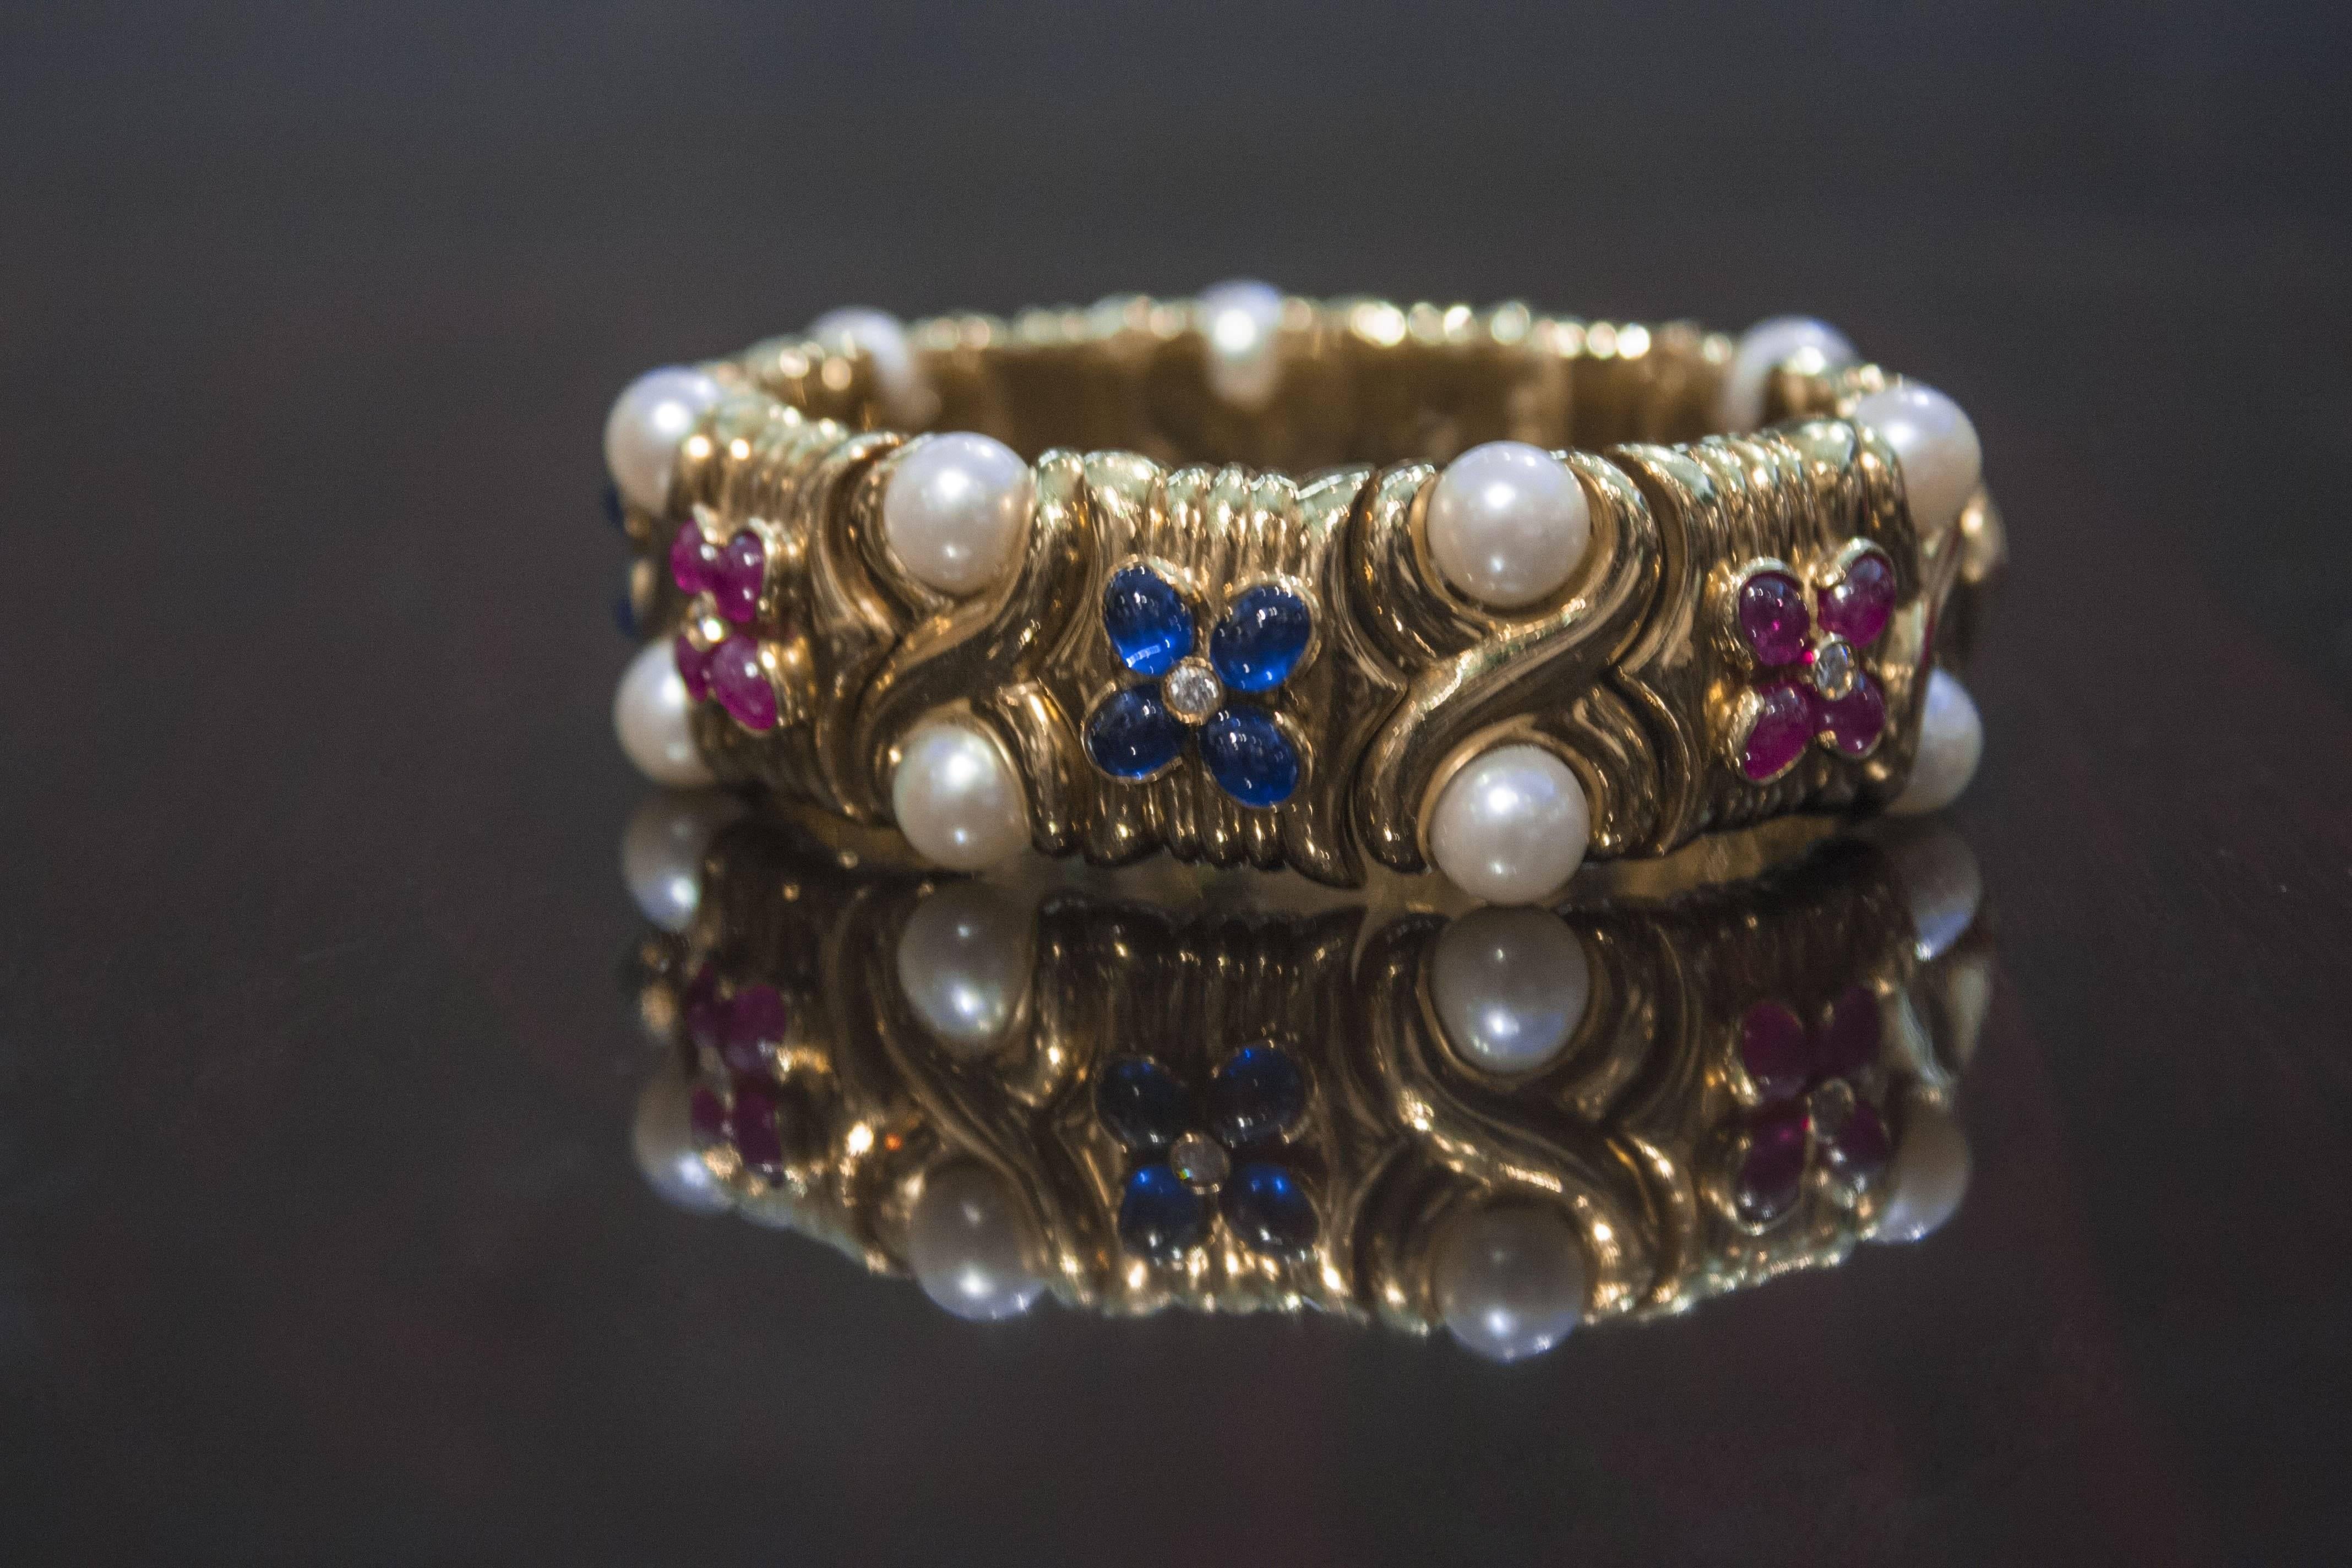 Magnifique bracelet de manchette flexible en or jaune 18 carats serti de perles, de saphirs et de rubis par Bulgari, vers les années 1980. 

Le bracelet est magistralement travaillé en or 18k avec des maillons flexibles et serti de perles, rubis et